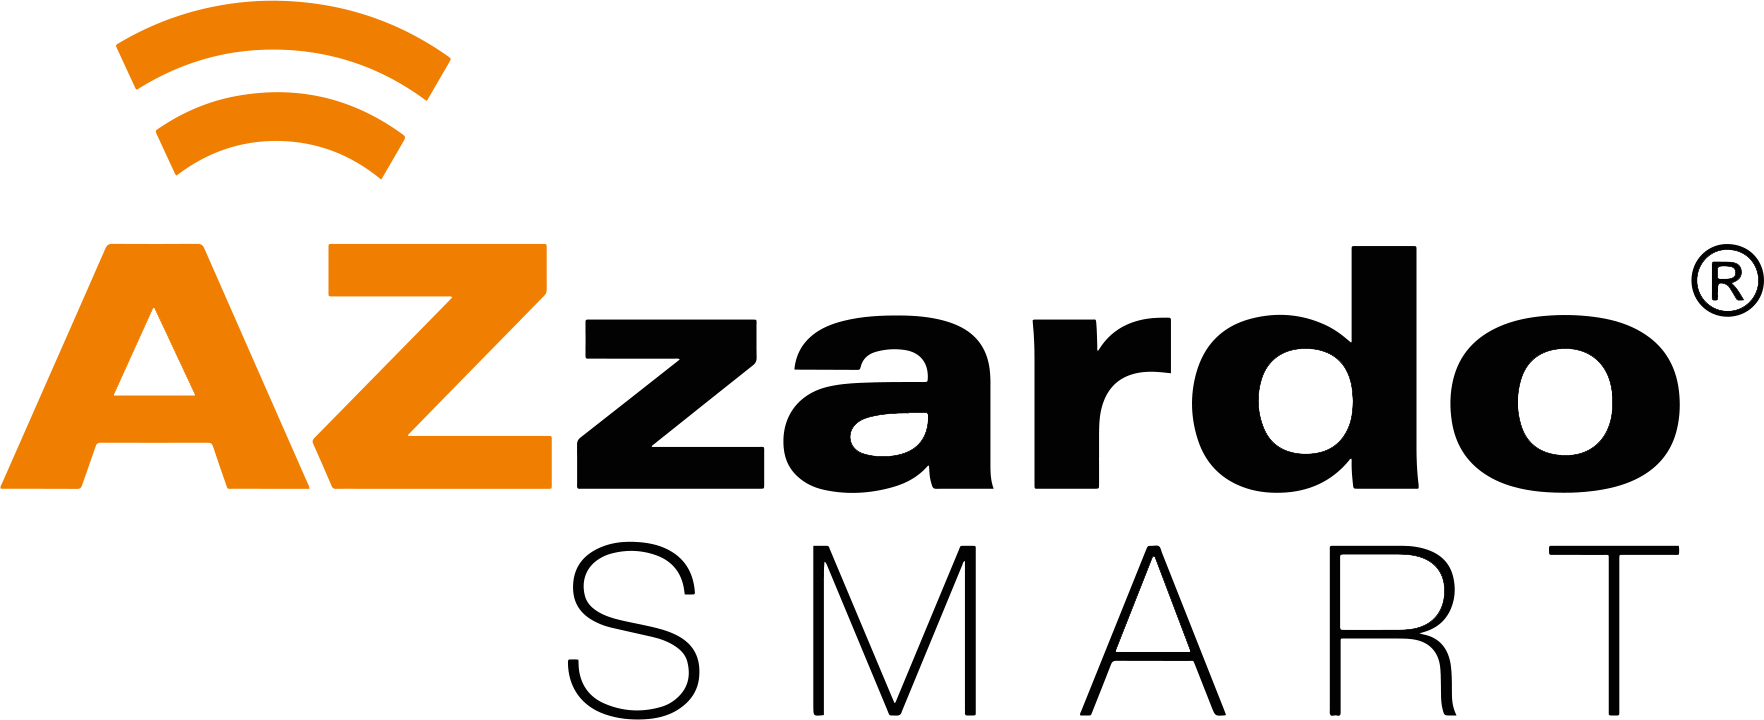 AzzSMART_logotyp-czarne-tarnsparent